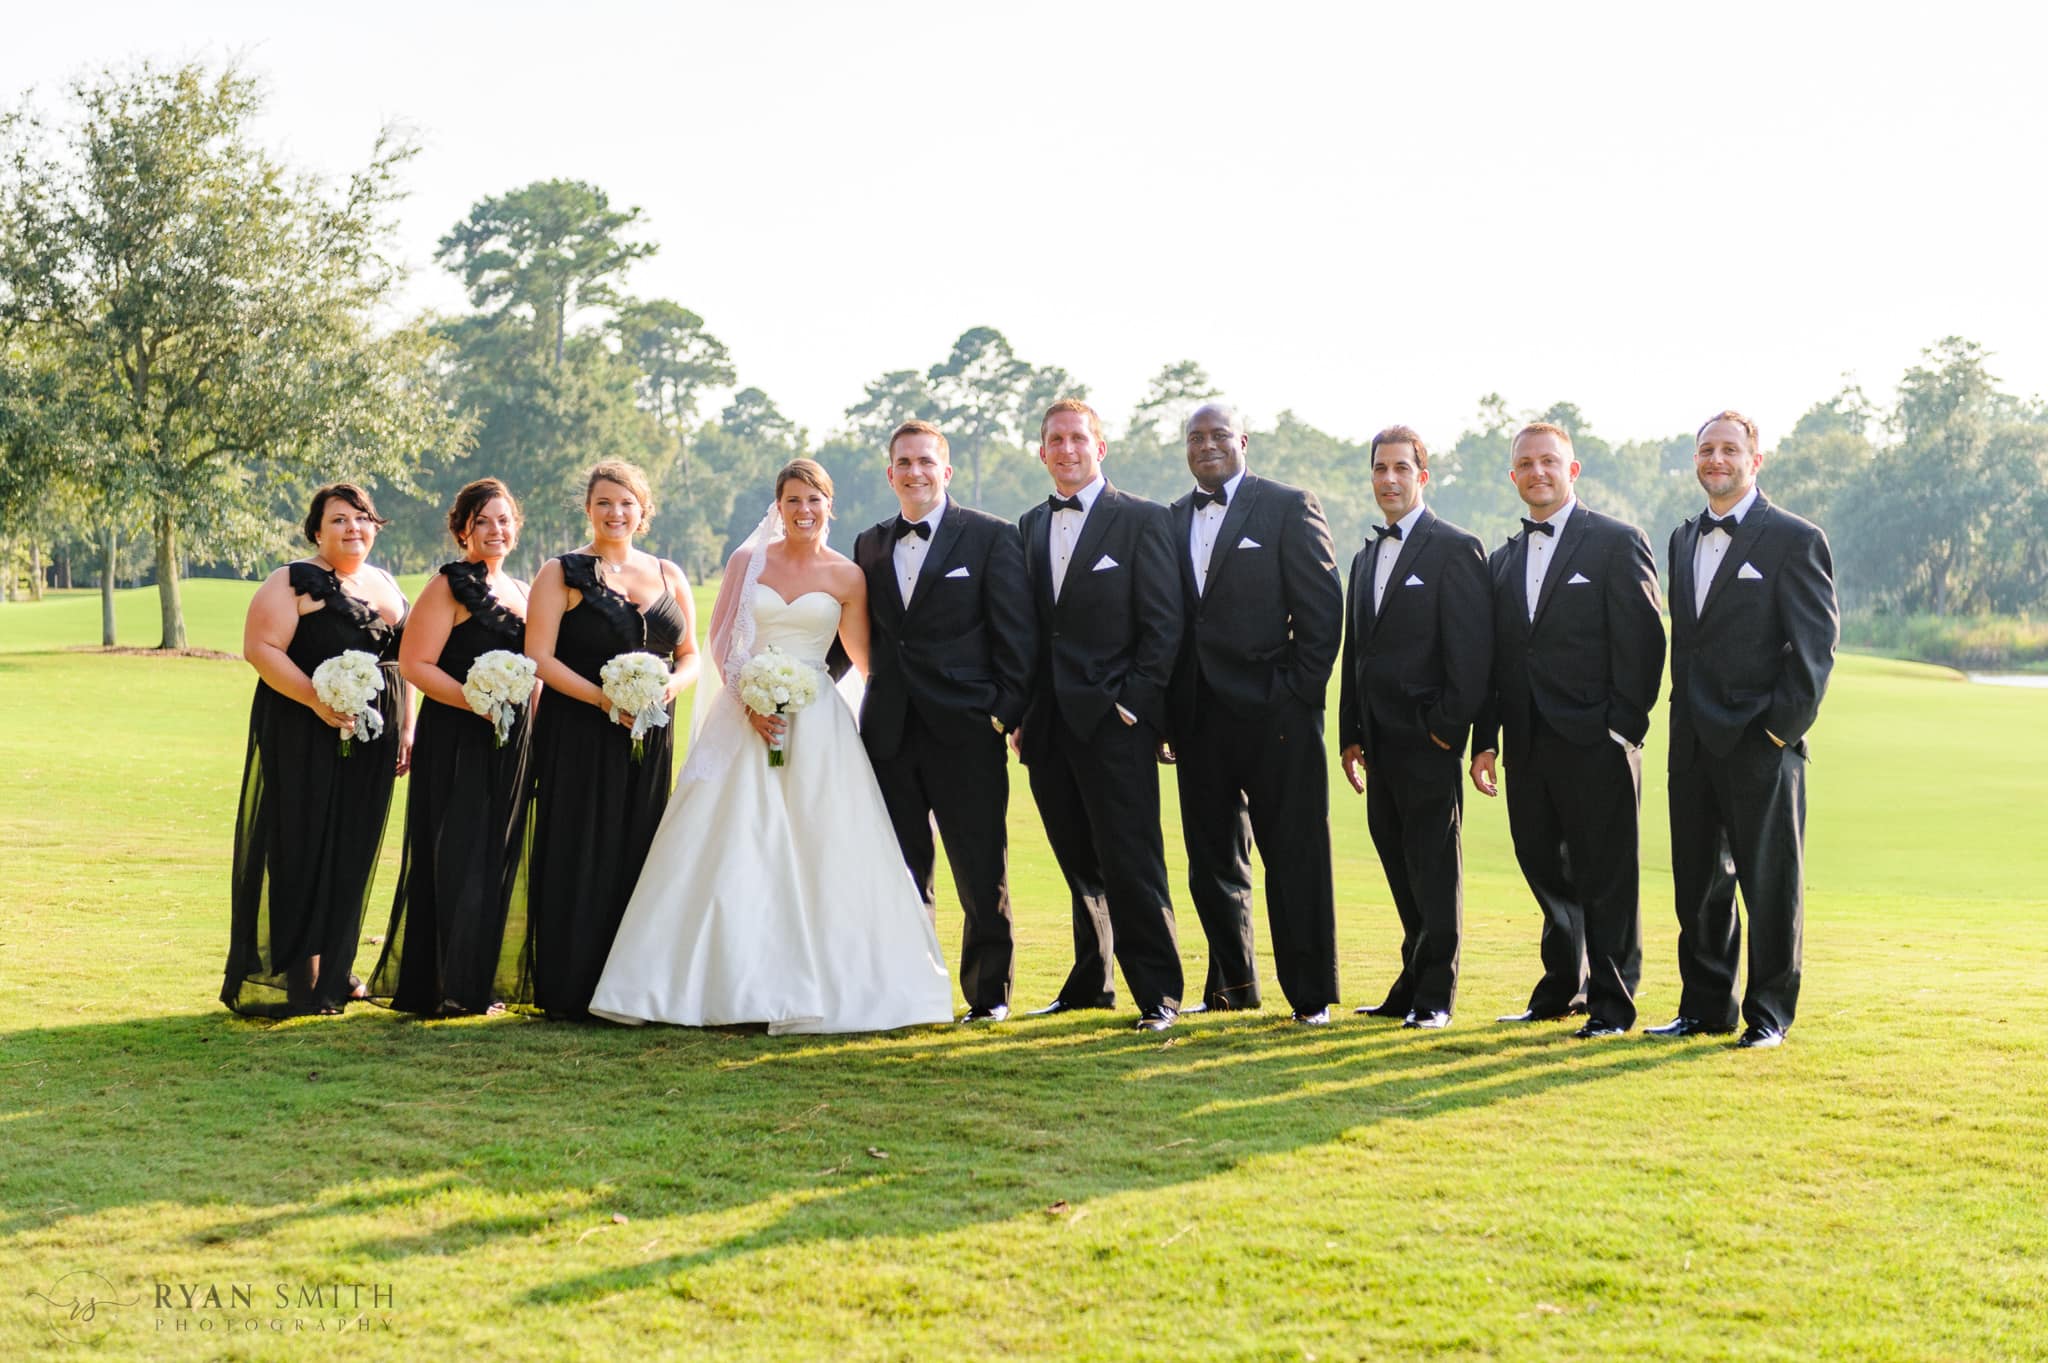 Bridal party on the golf course - Daniel Island Club - Charleston, SC